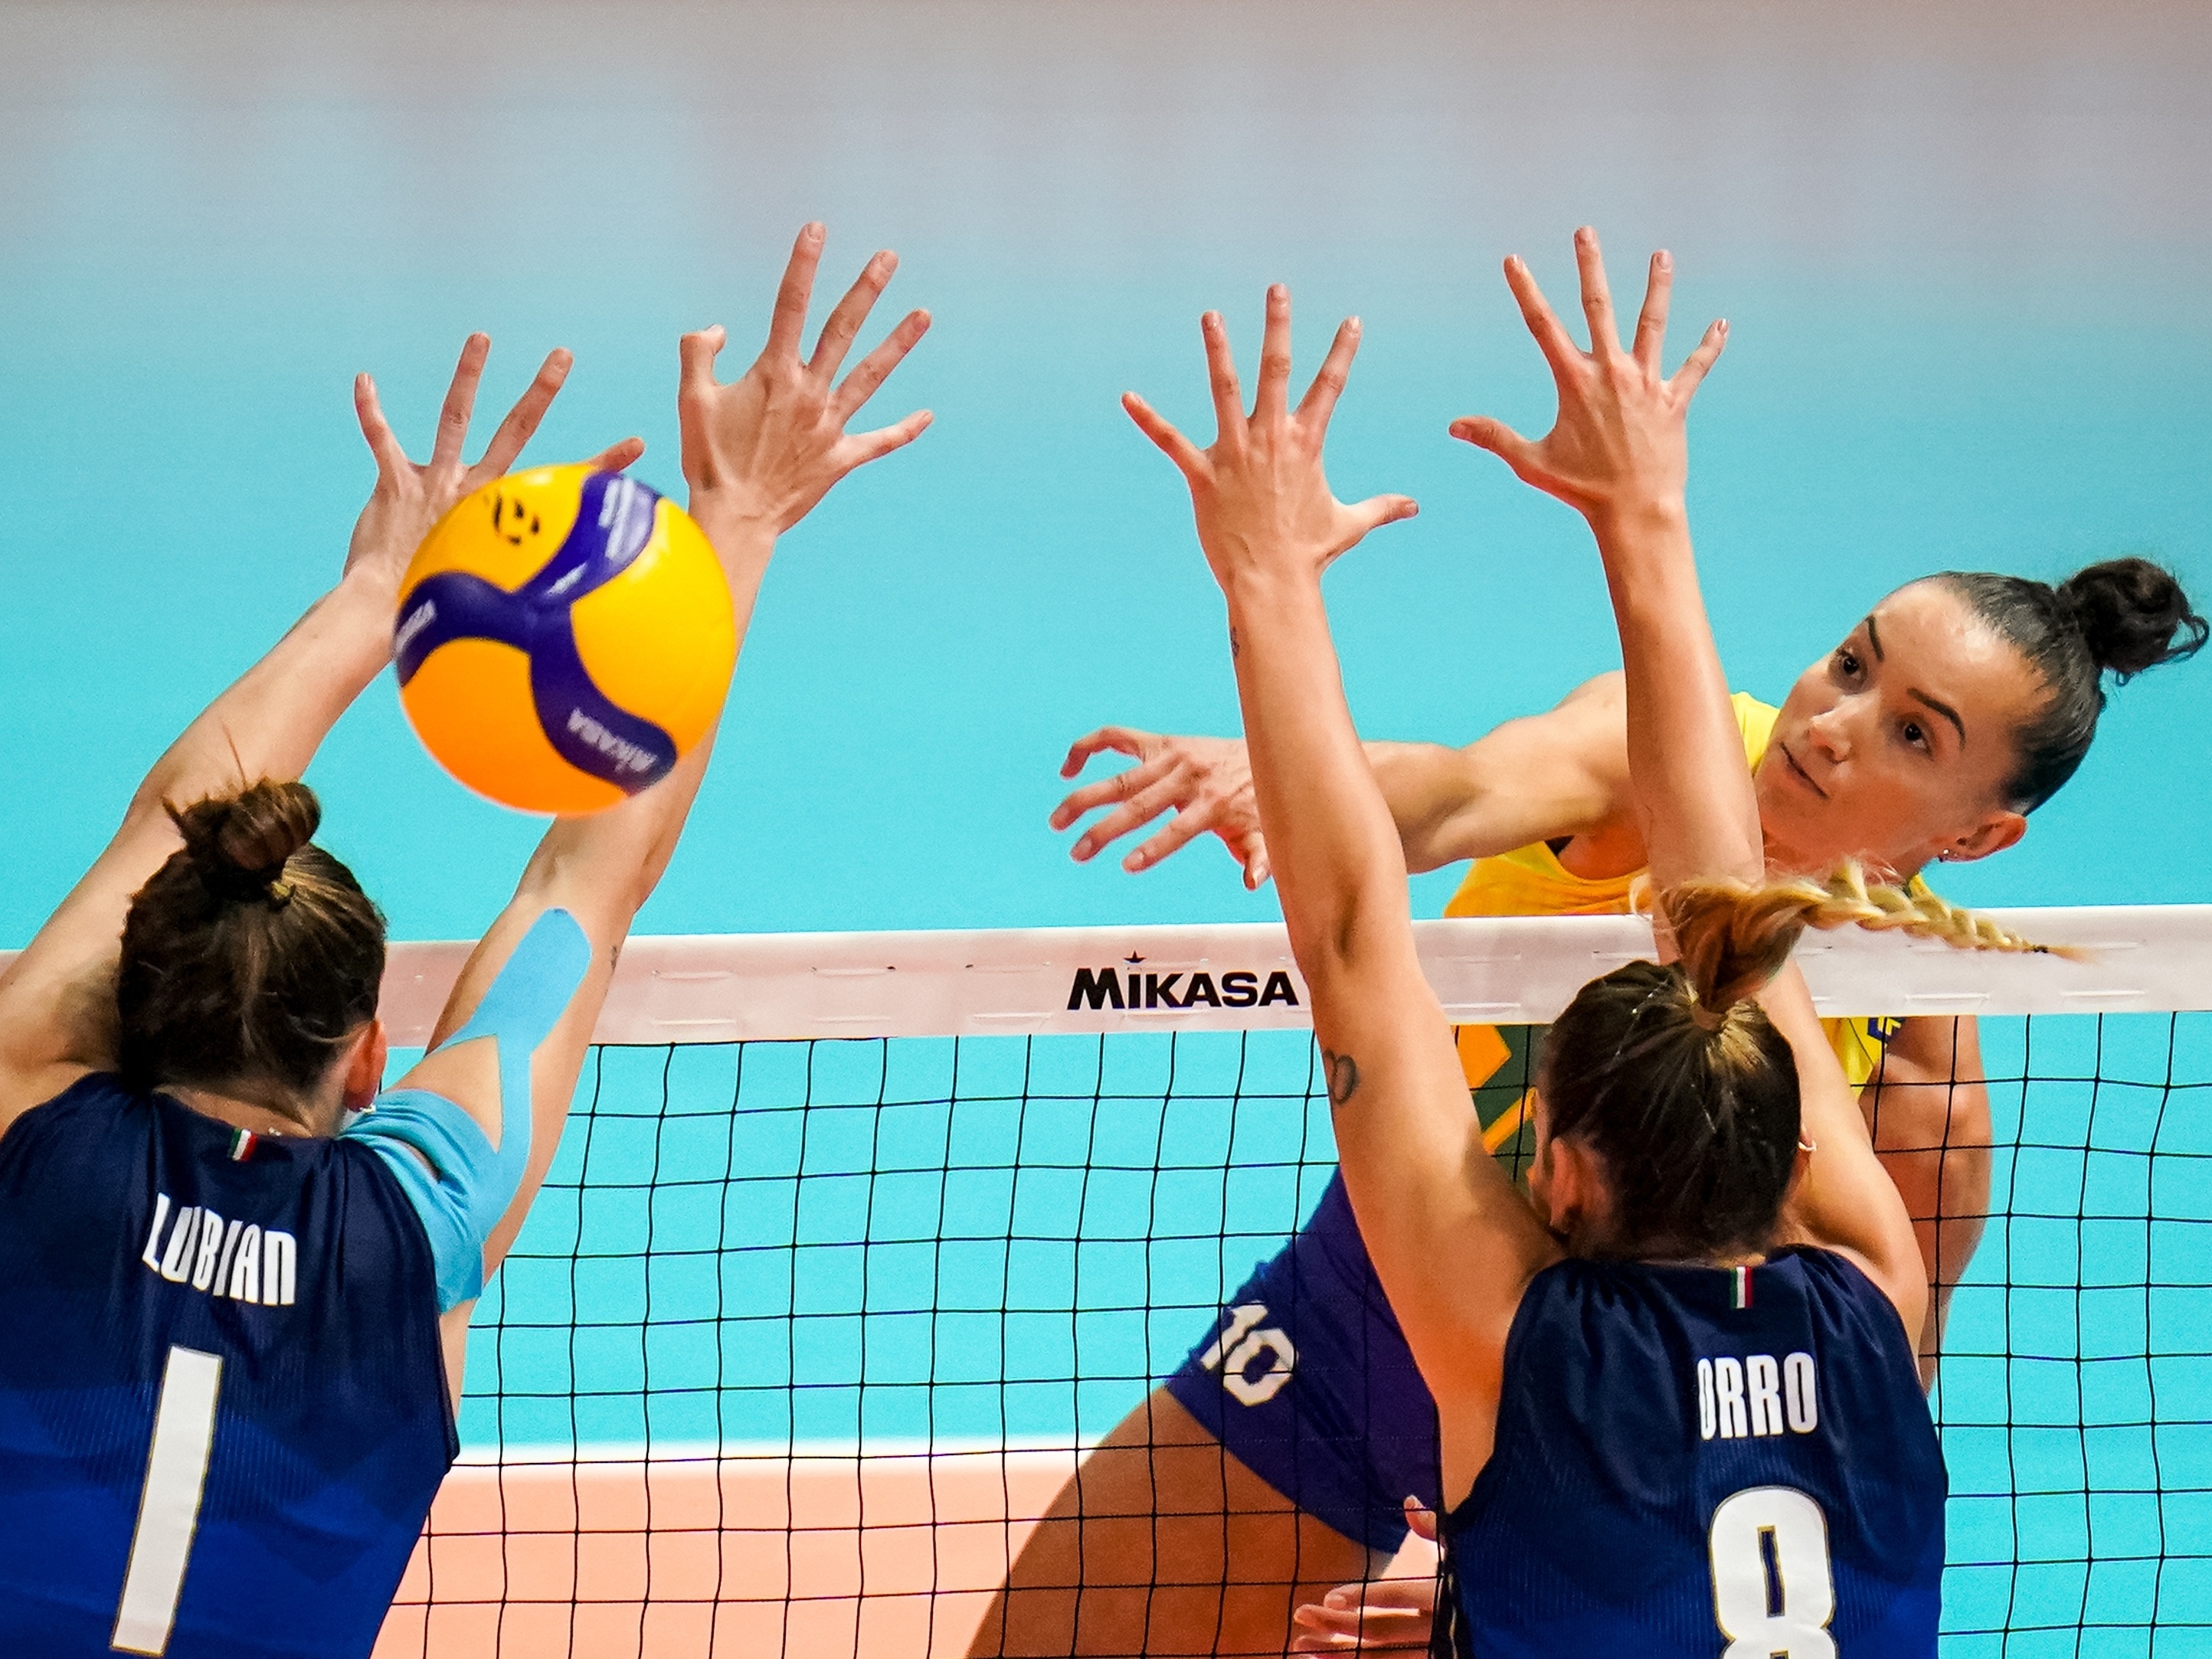 De virada, Sérvia bate a Itália e é a nova campeã mundial de vôlei feminino